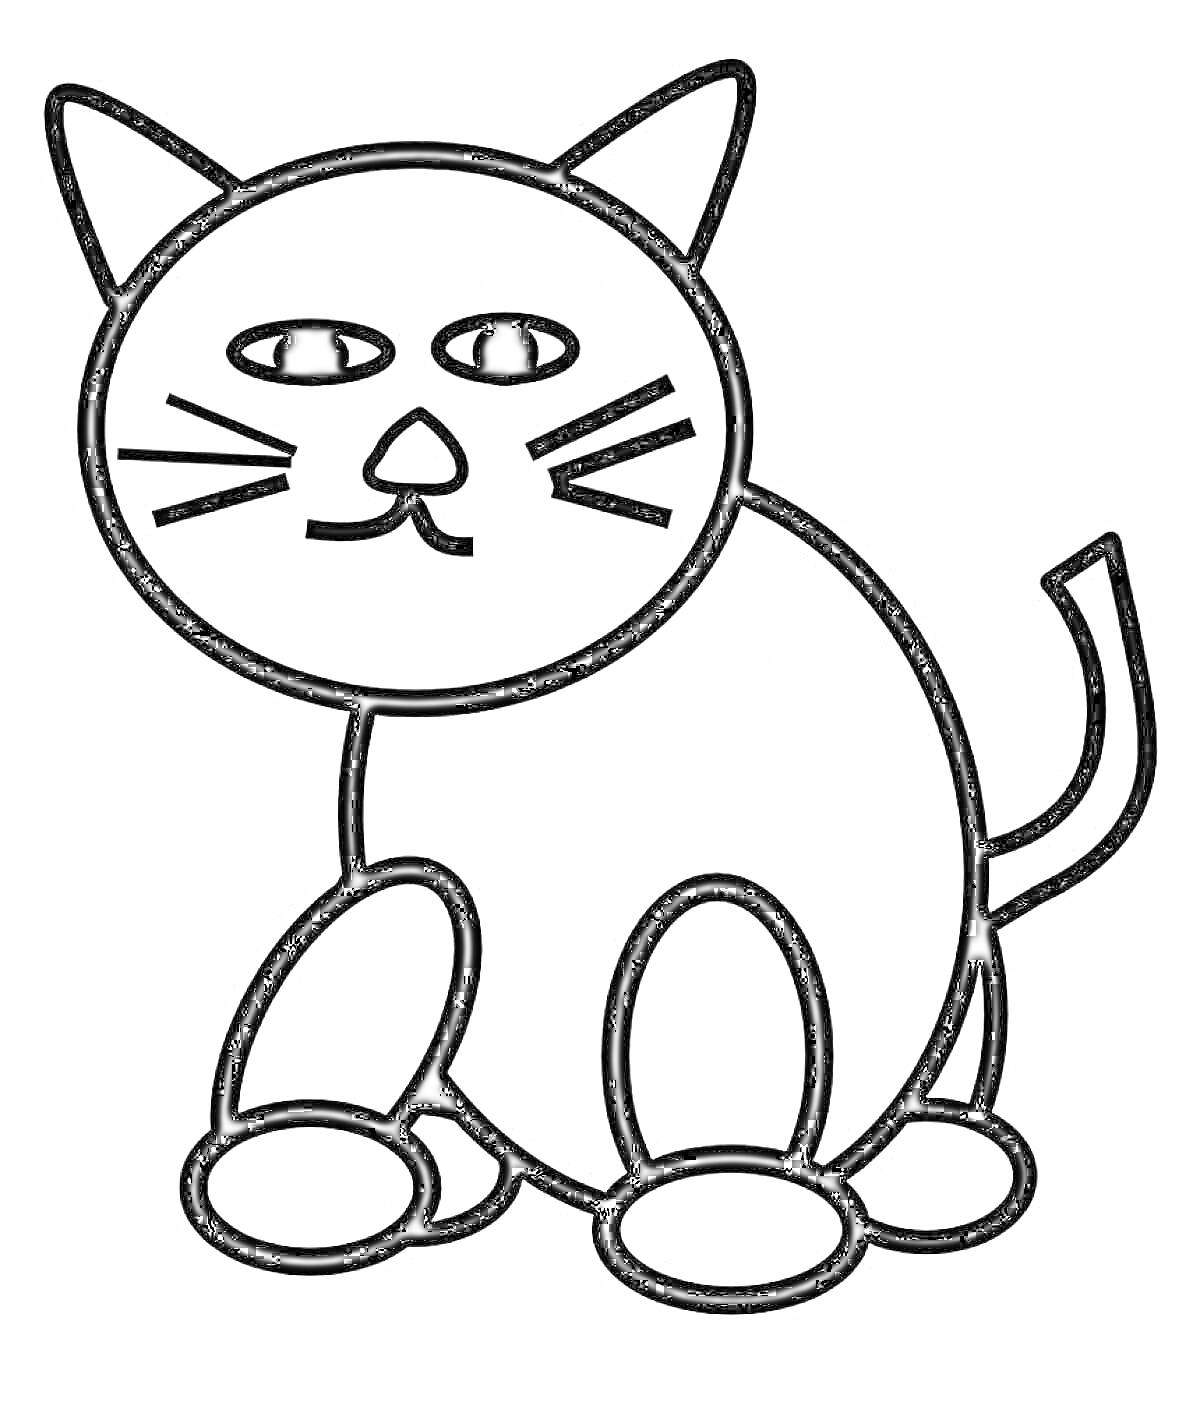 Раскраска Раскраска с черной кошкой, изображена сидящая кошка с большими глазами, вытянутыми ушами и загнутым хвостом.